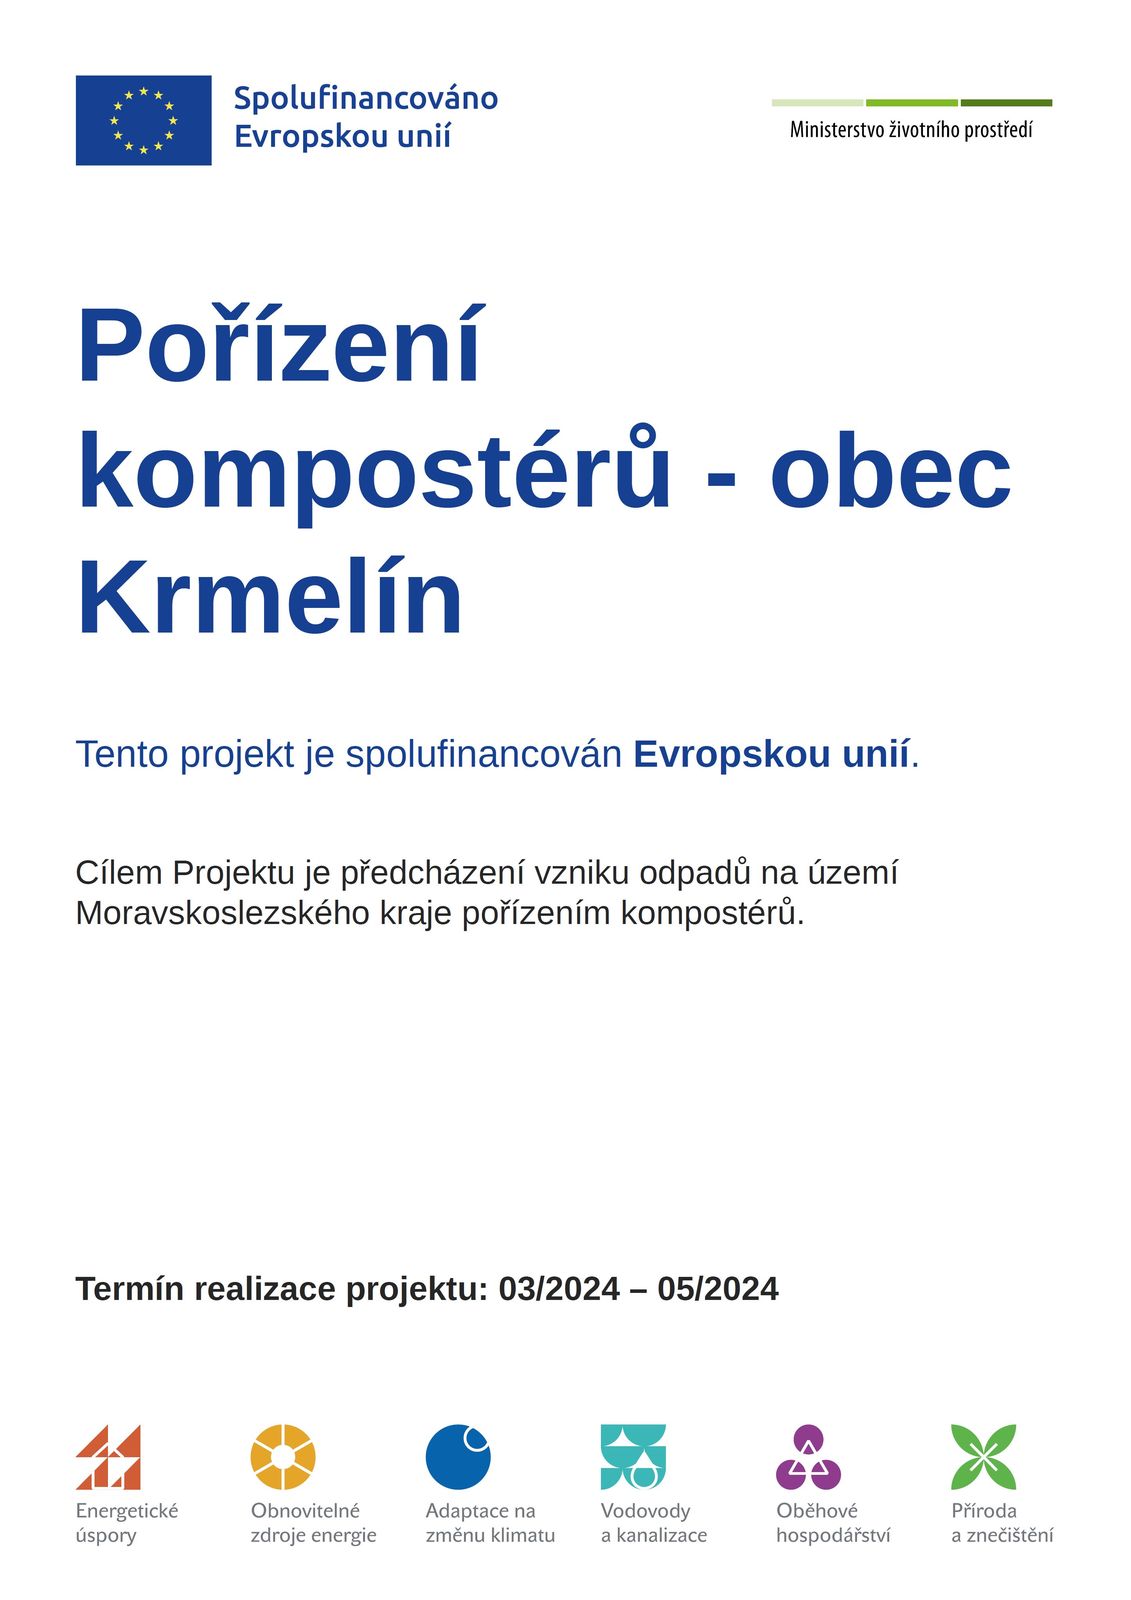 Pořízení kompostérů z dotace EU - obec Krmelín